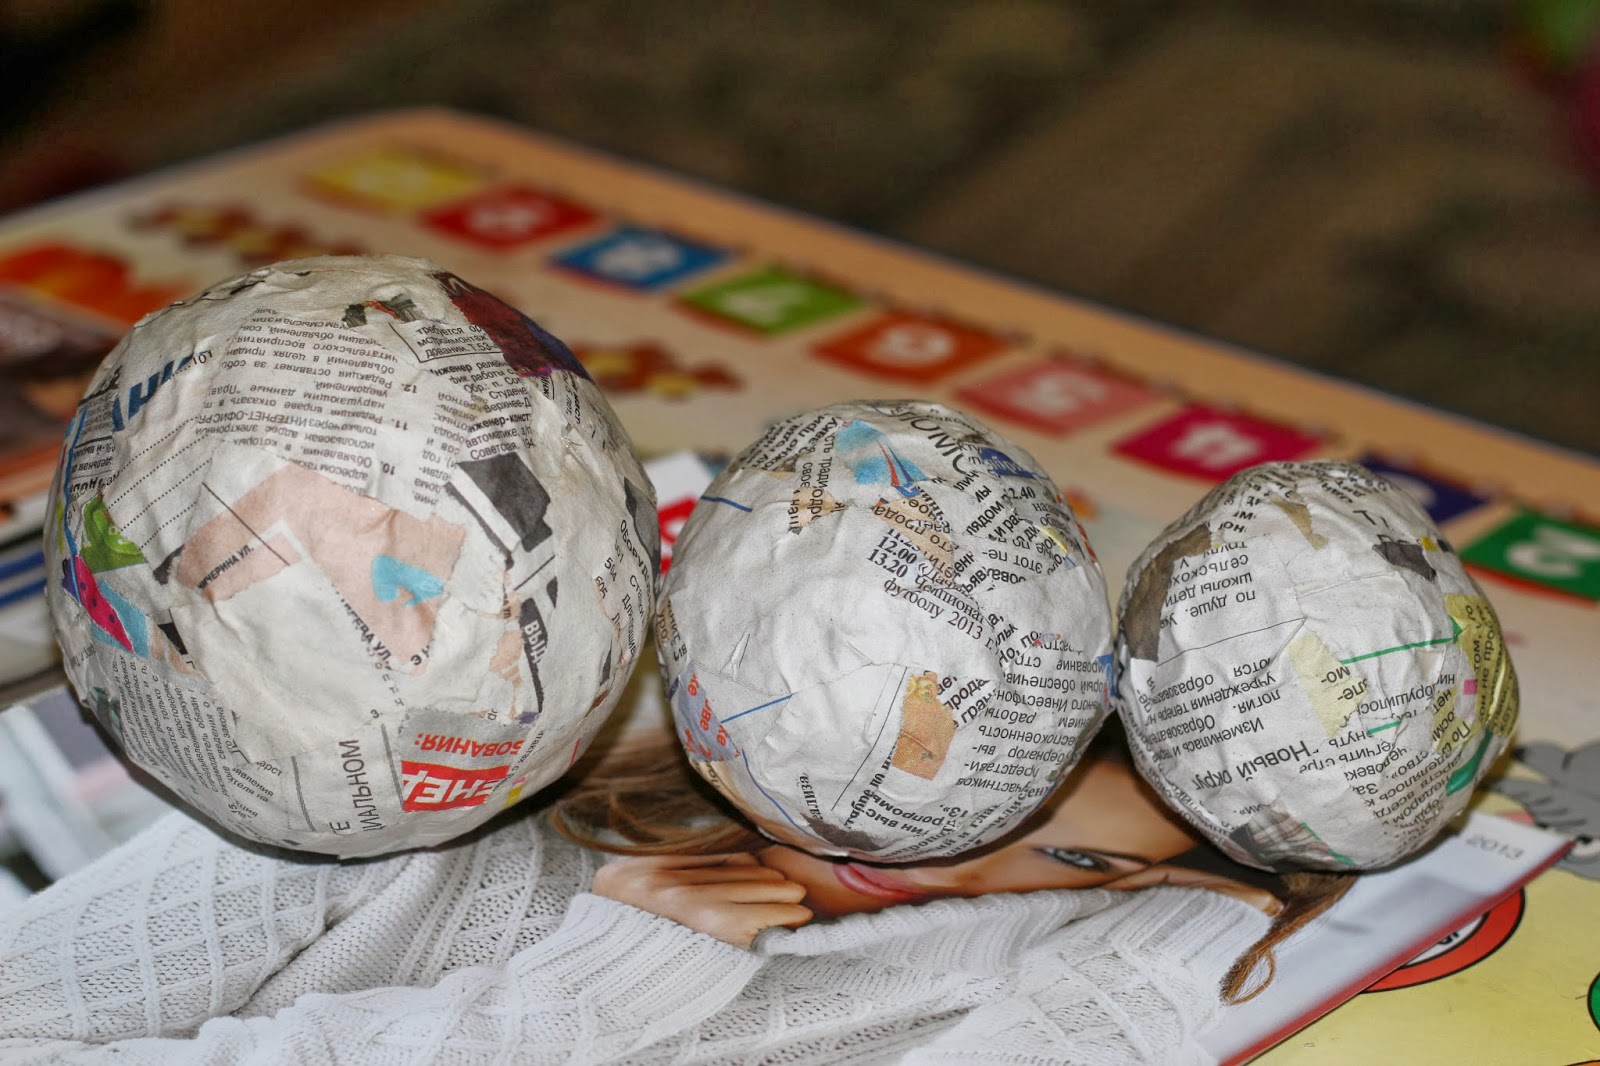 Создаем оригинальные новогодние шары своими руками к 2019 году